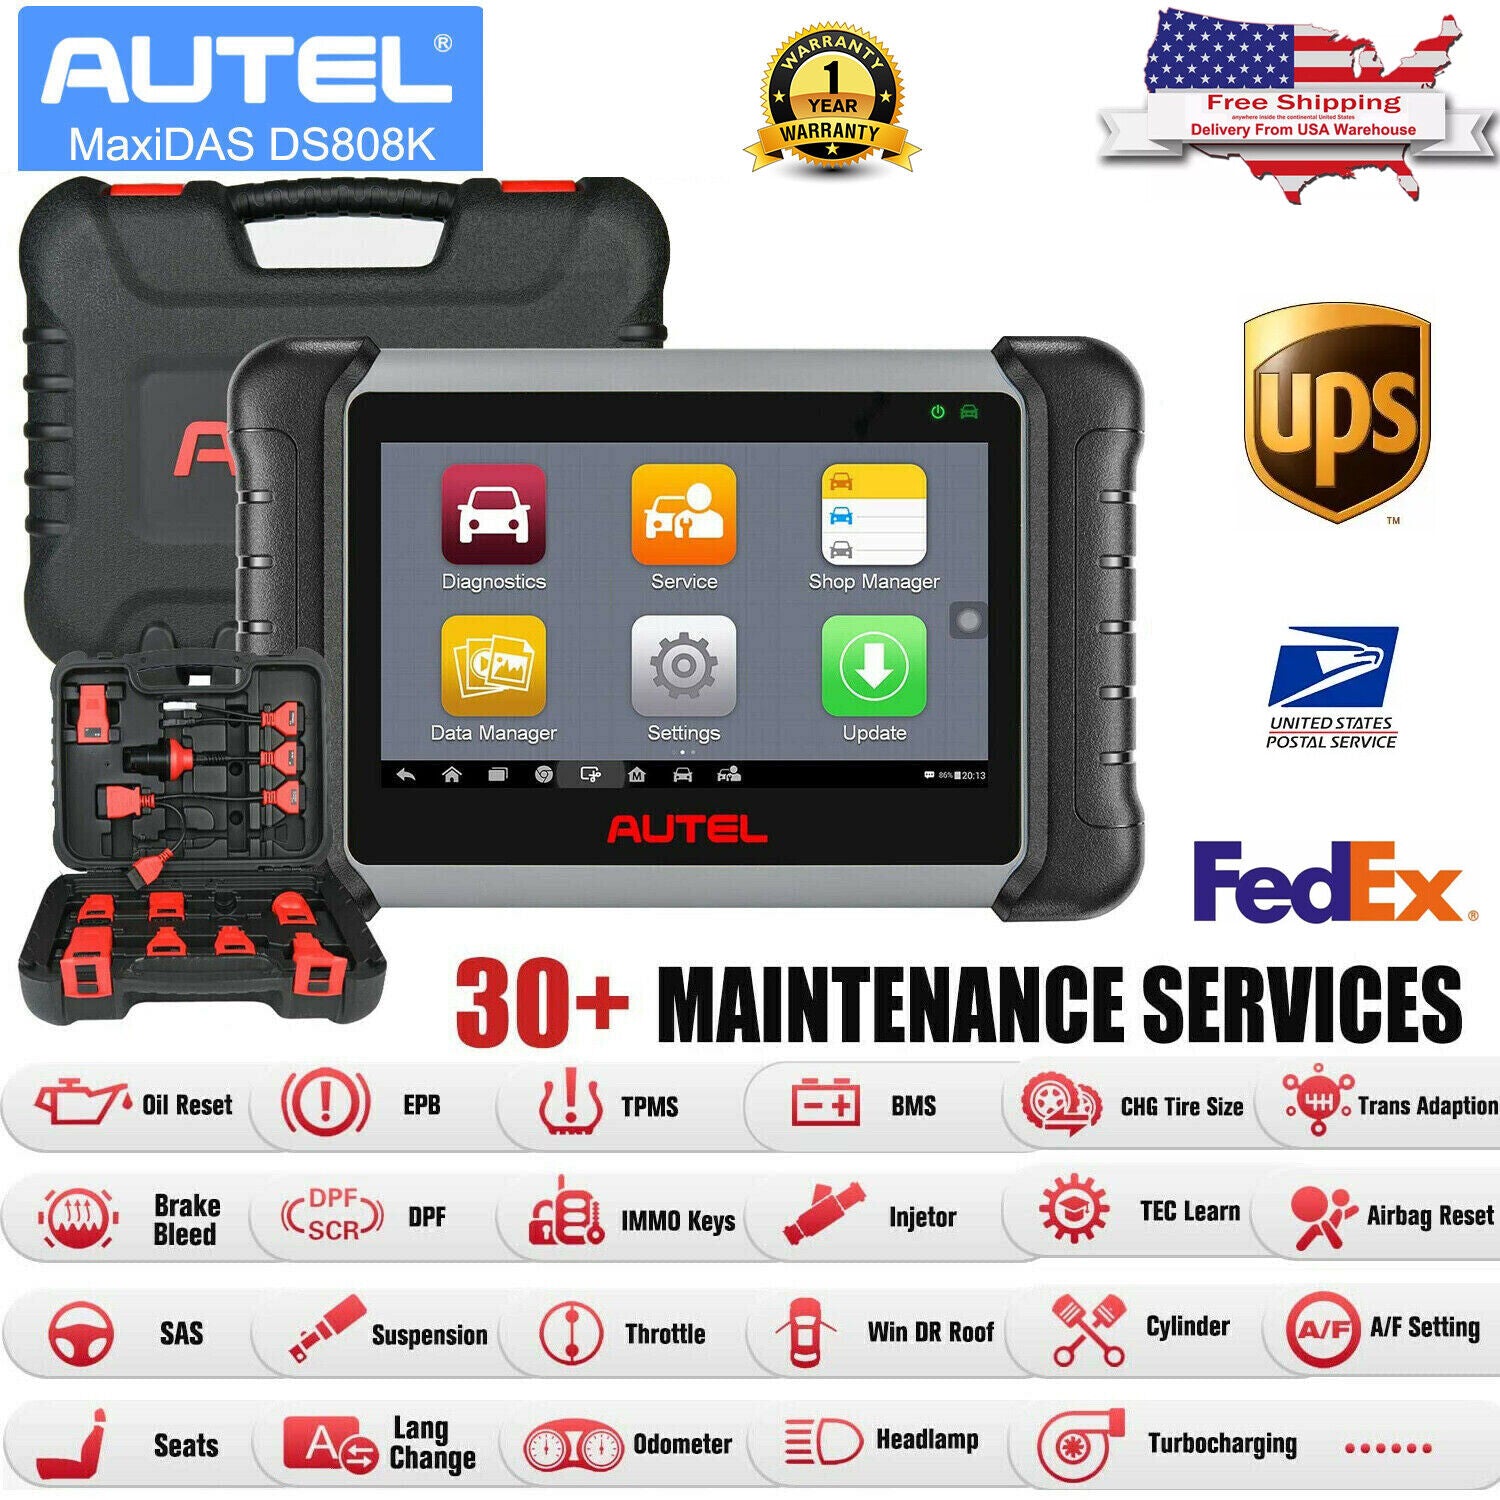 Autel MaxiDAS DS808K has 30+ maintenance service